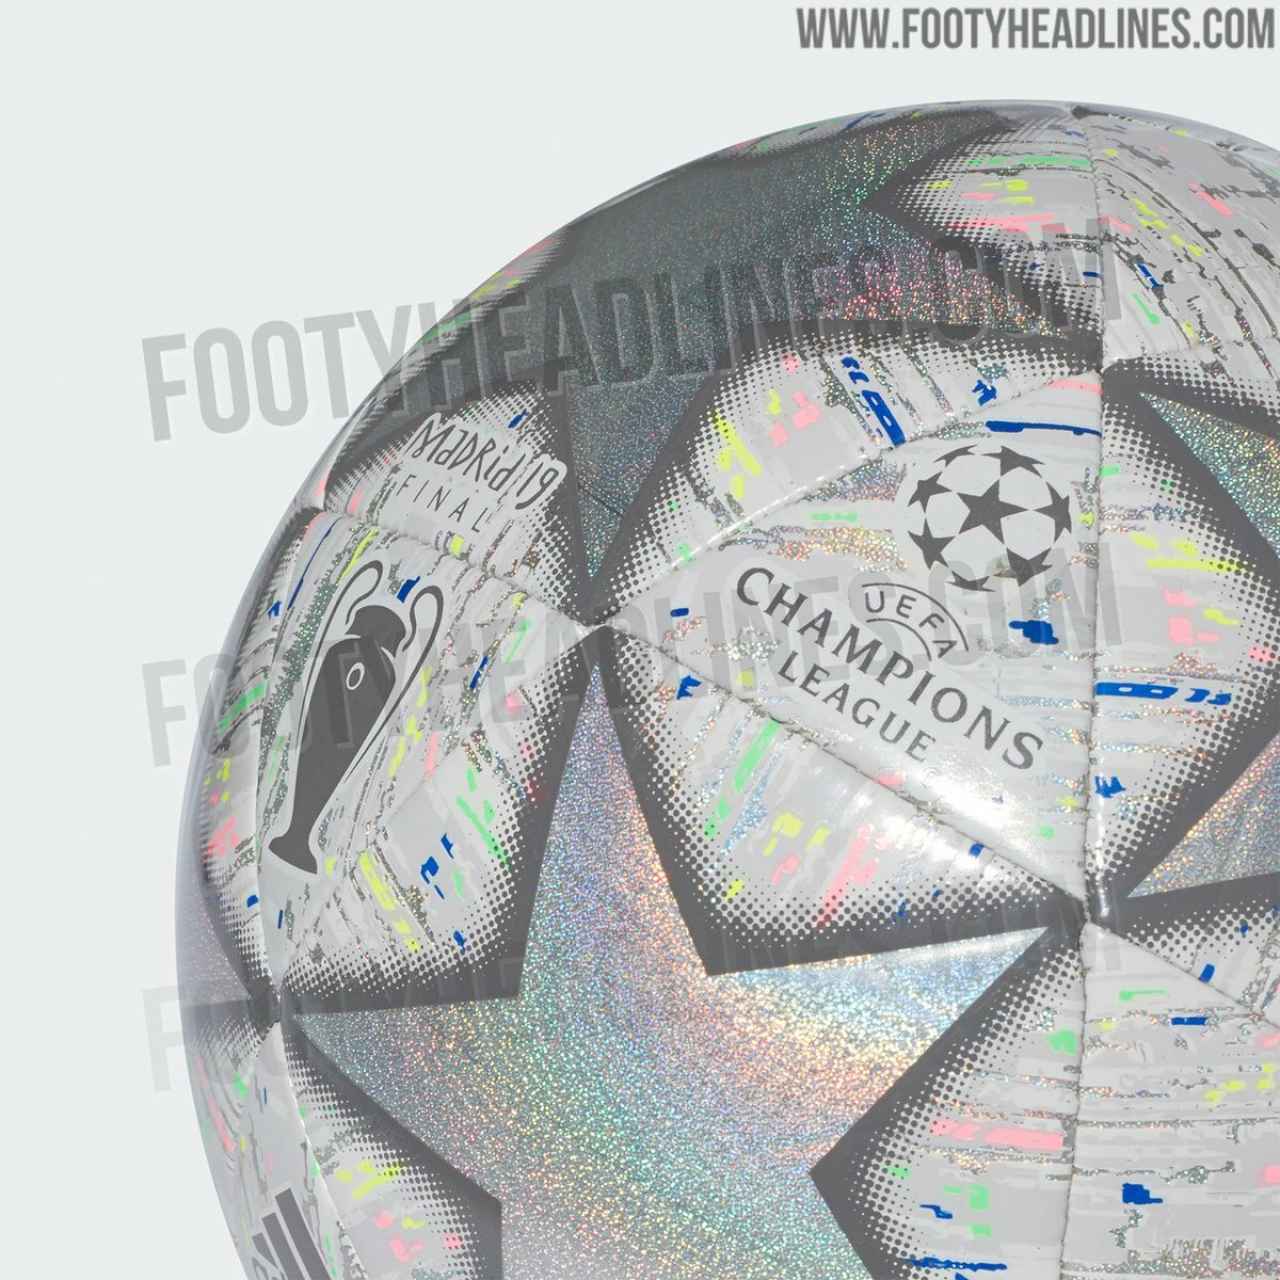 El balón de la final de la Champions League 2019. Foto: footyheadlines.com